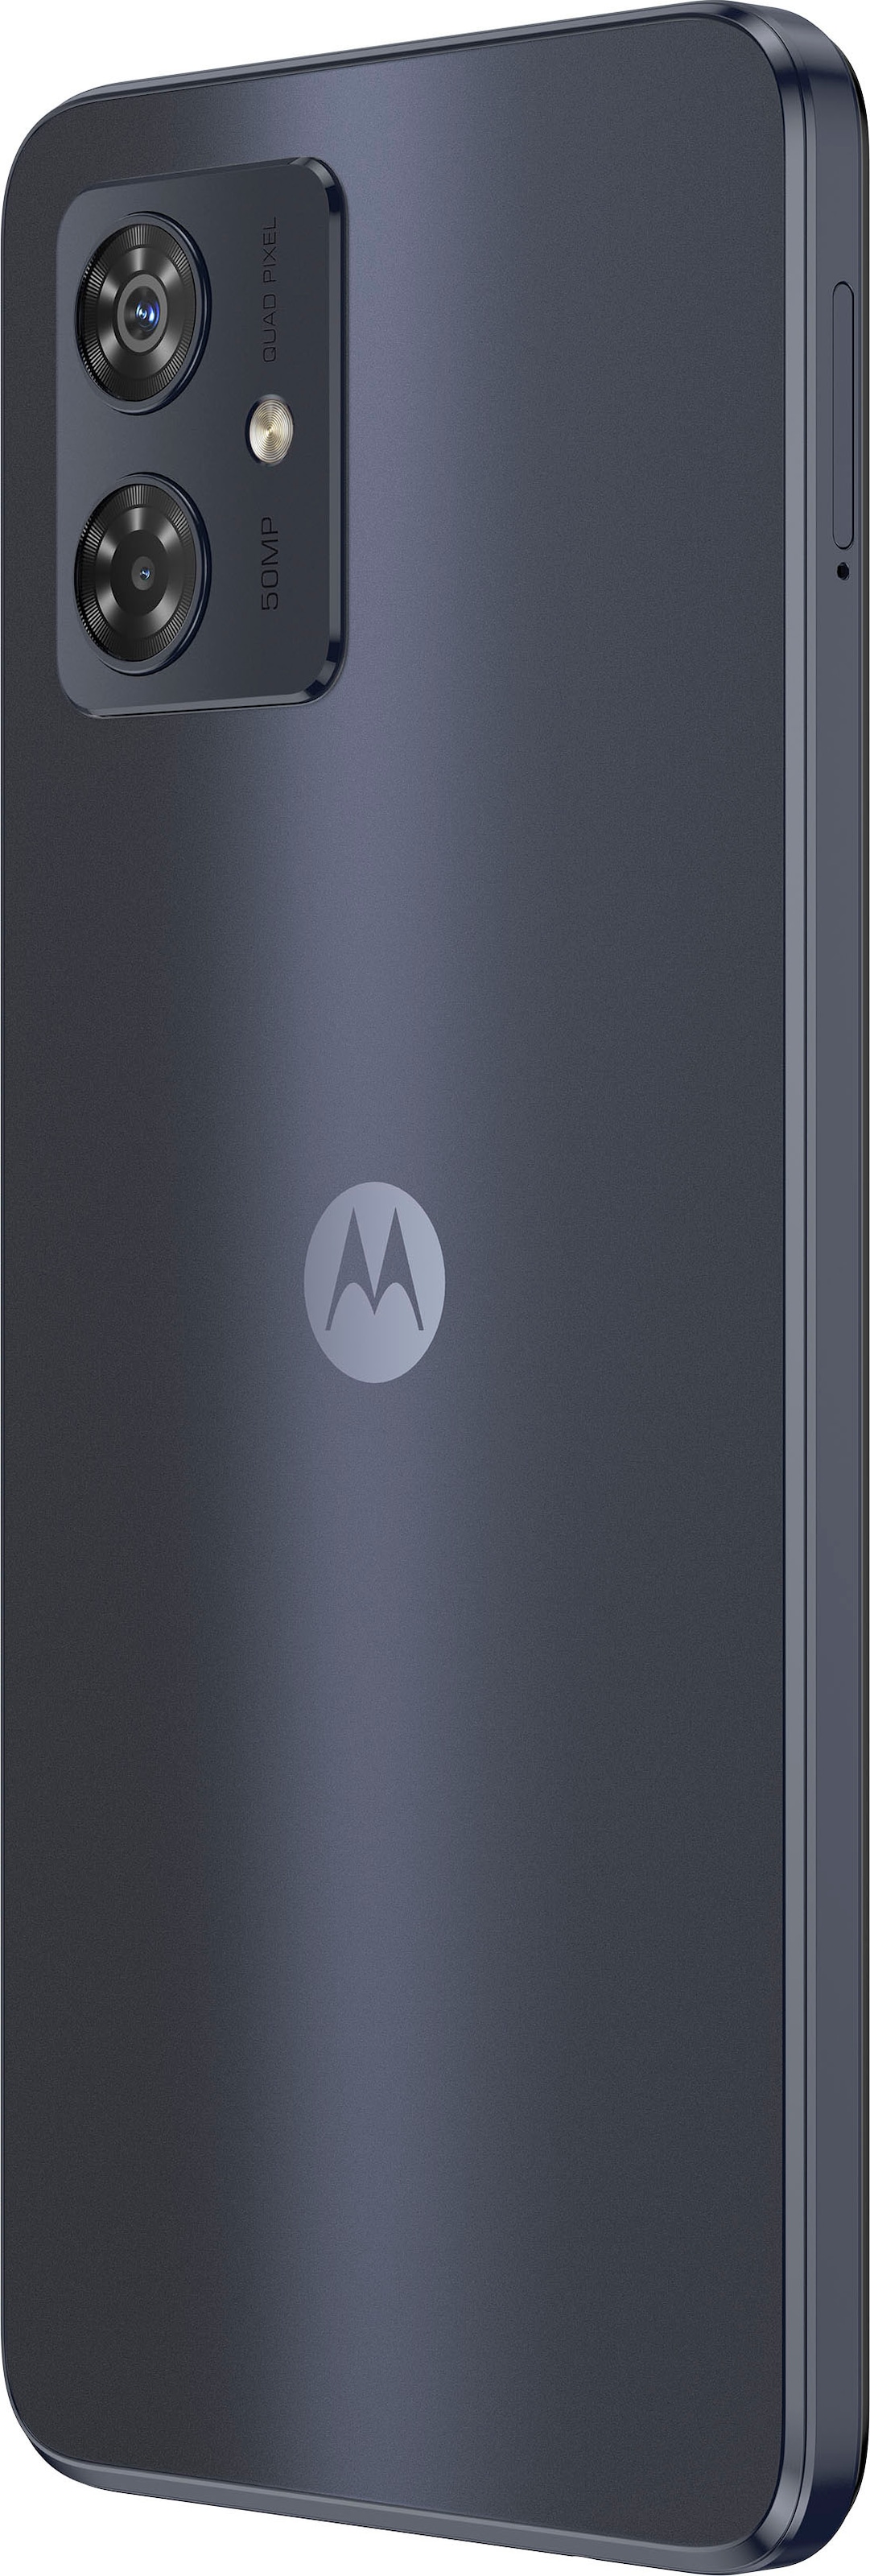 »MOTOROLA 50 16,51 g54«, Smartphone auf Raten bestellen Kamera moto Zoll, Motorola grün, mint cm/6,5 256 Speicherplatz, GB MP